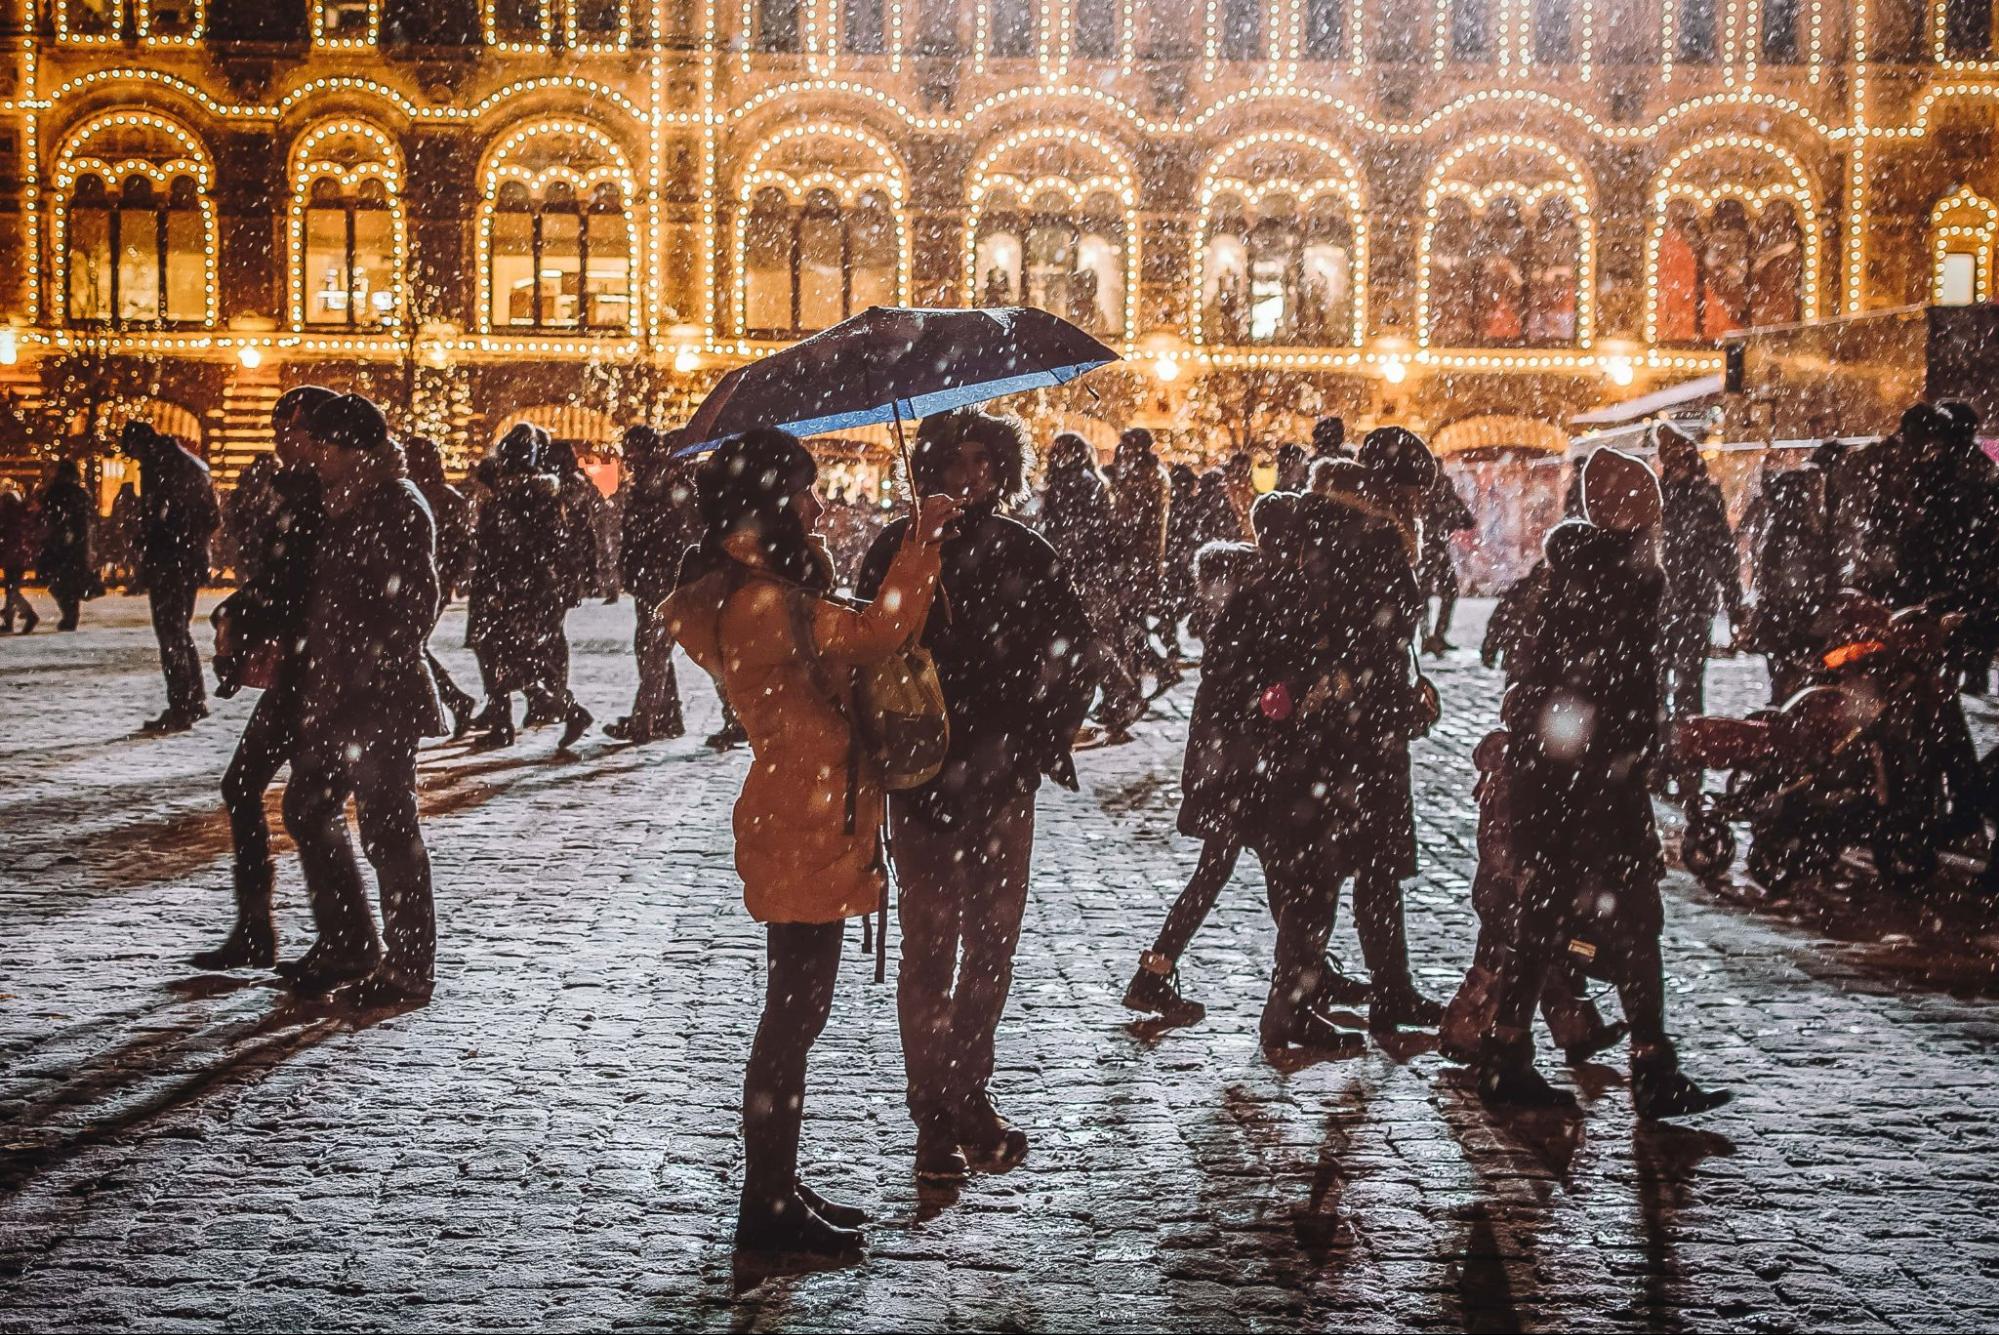 A couple under an umbrella walk through a lit plaza as the snow falls.